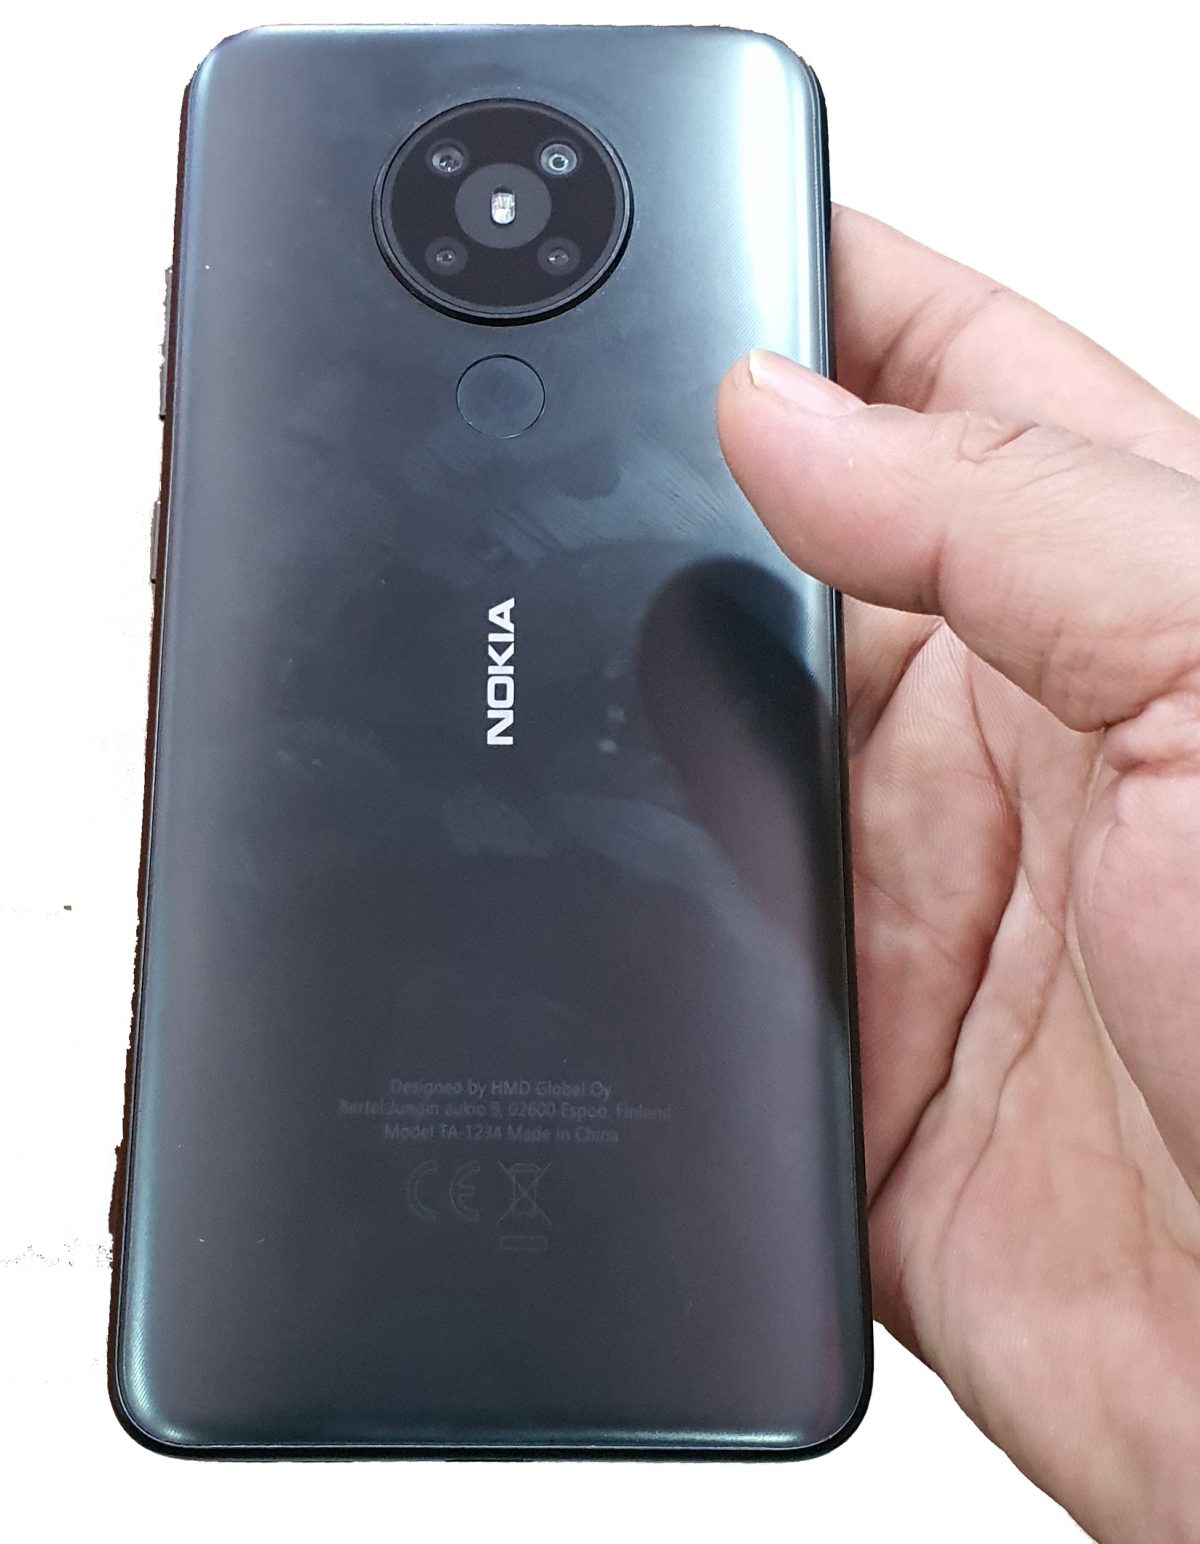 Nokia готовит к выходу недорогой смартфон с необычной четверной камерой